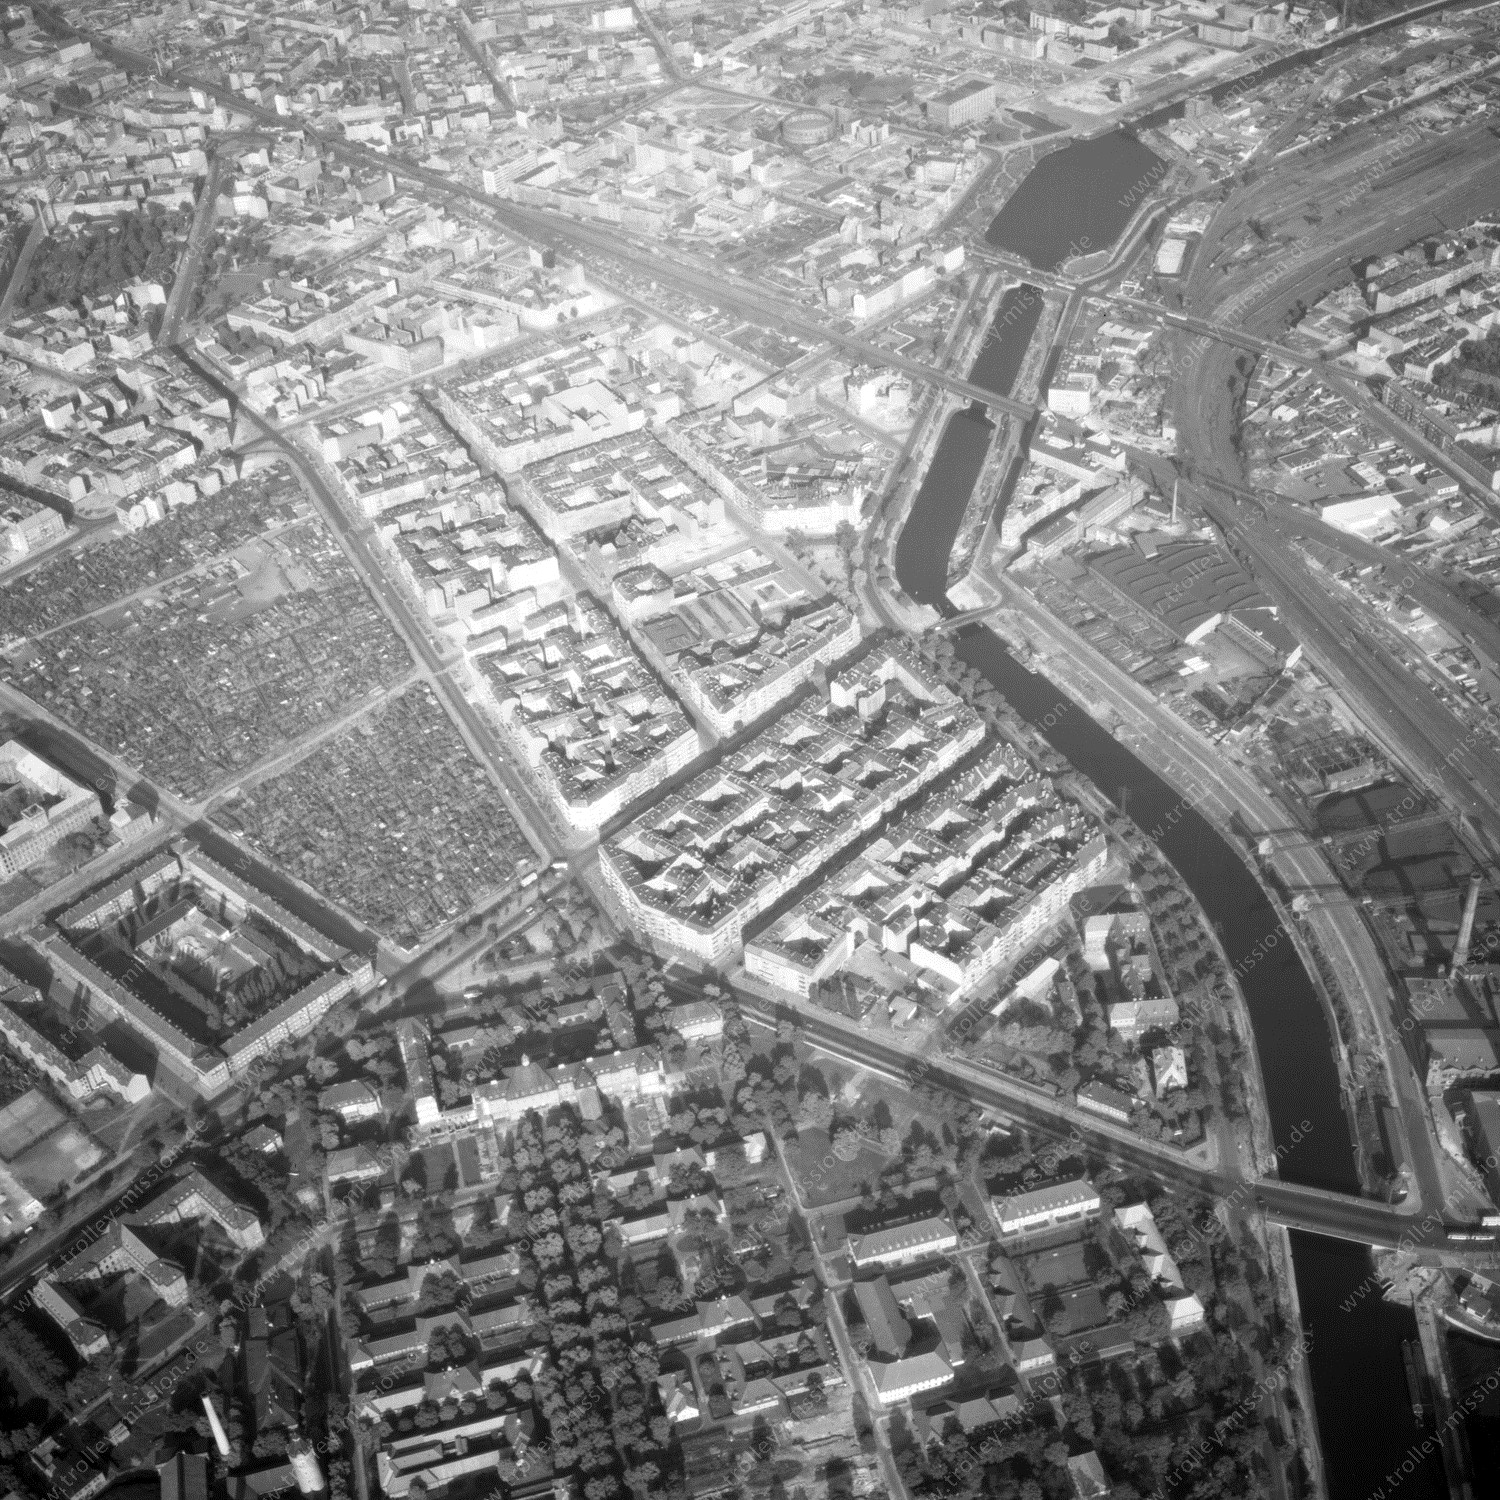 Alte Fotos und Luftbilder von Berlin - Luftbildaufnahme Nr. 07 - Historische Luftaufnahmen von West-Berlin aus dem Jahr 1954 - Flugstrecke Oscar